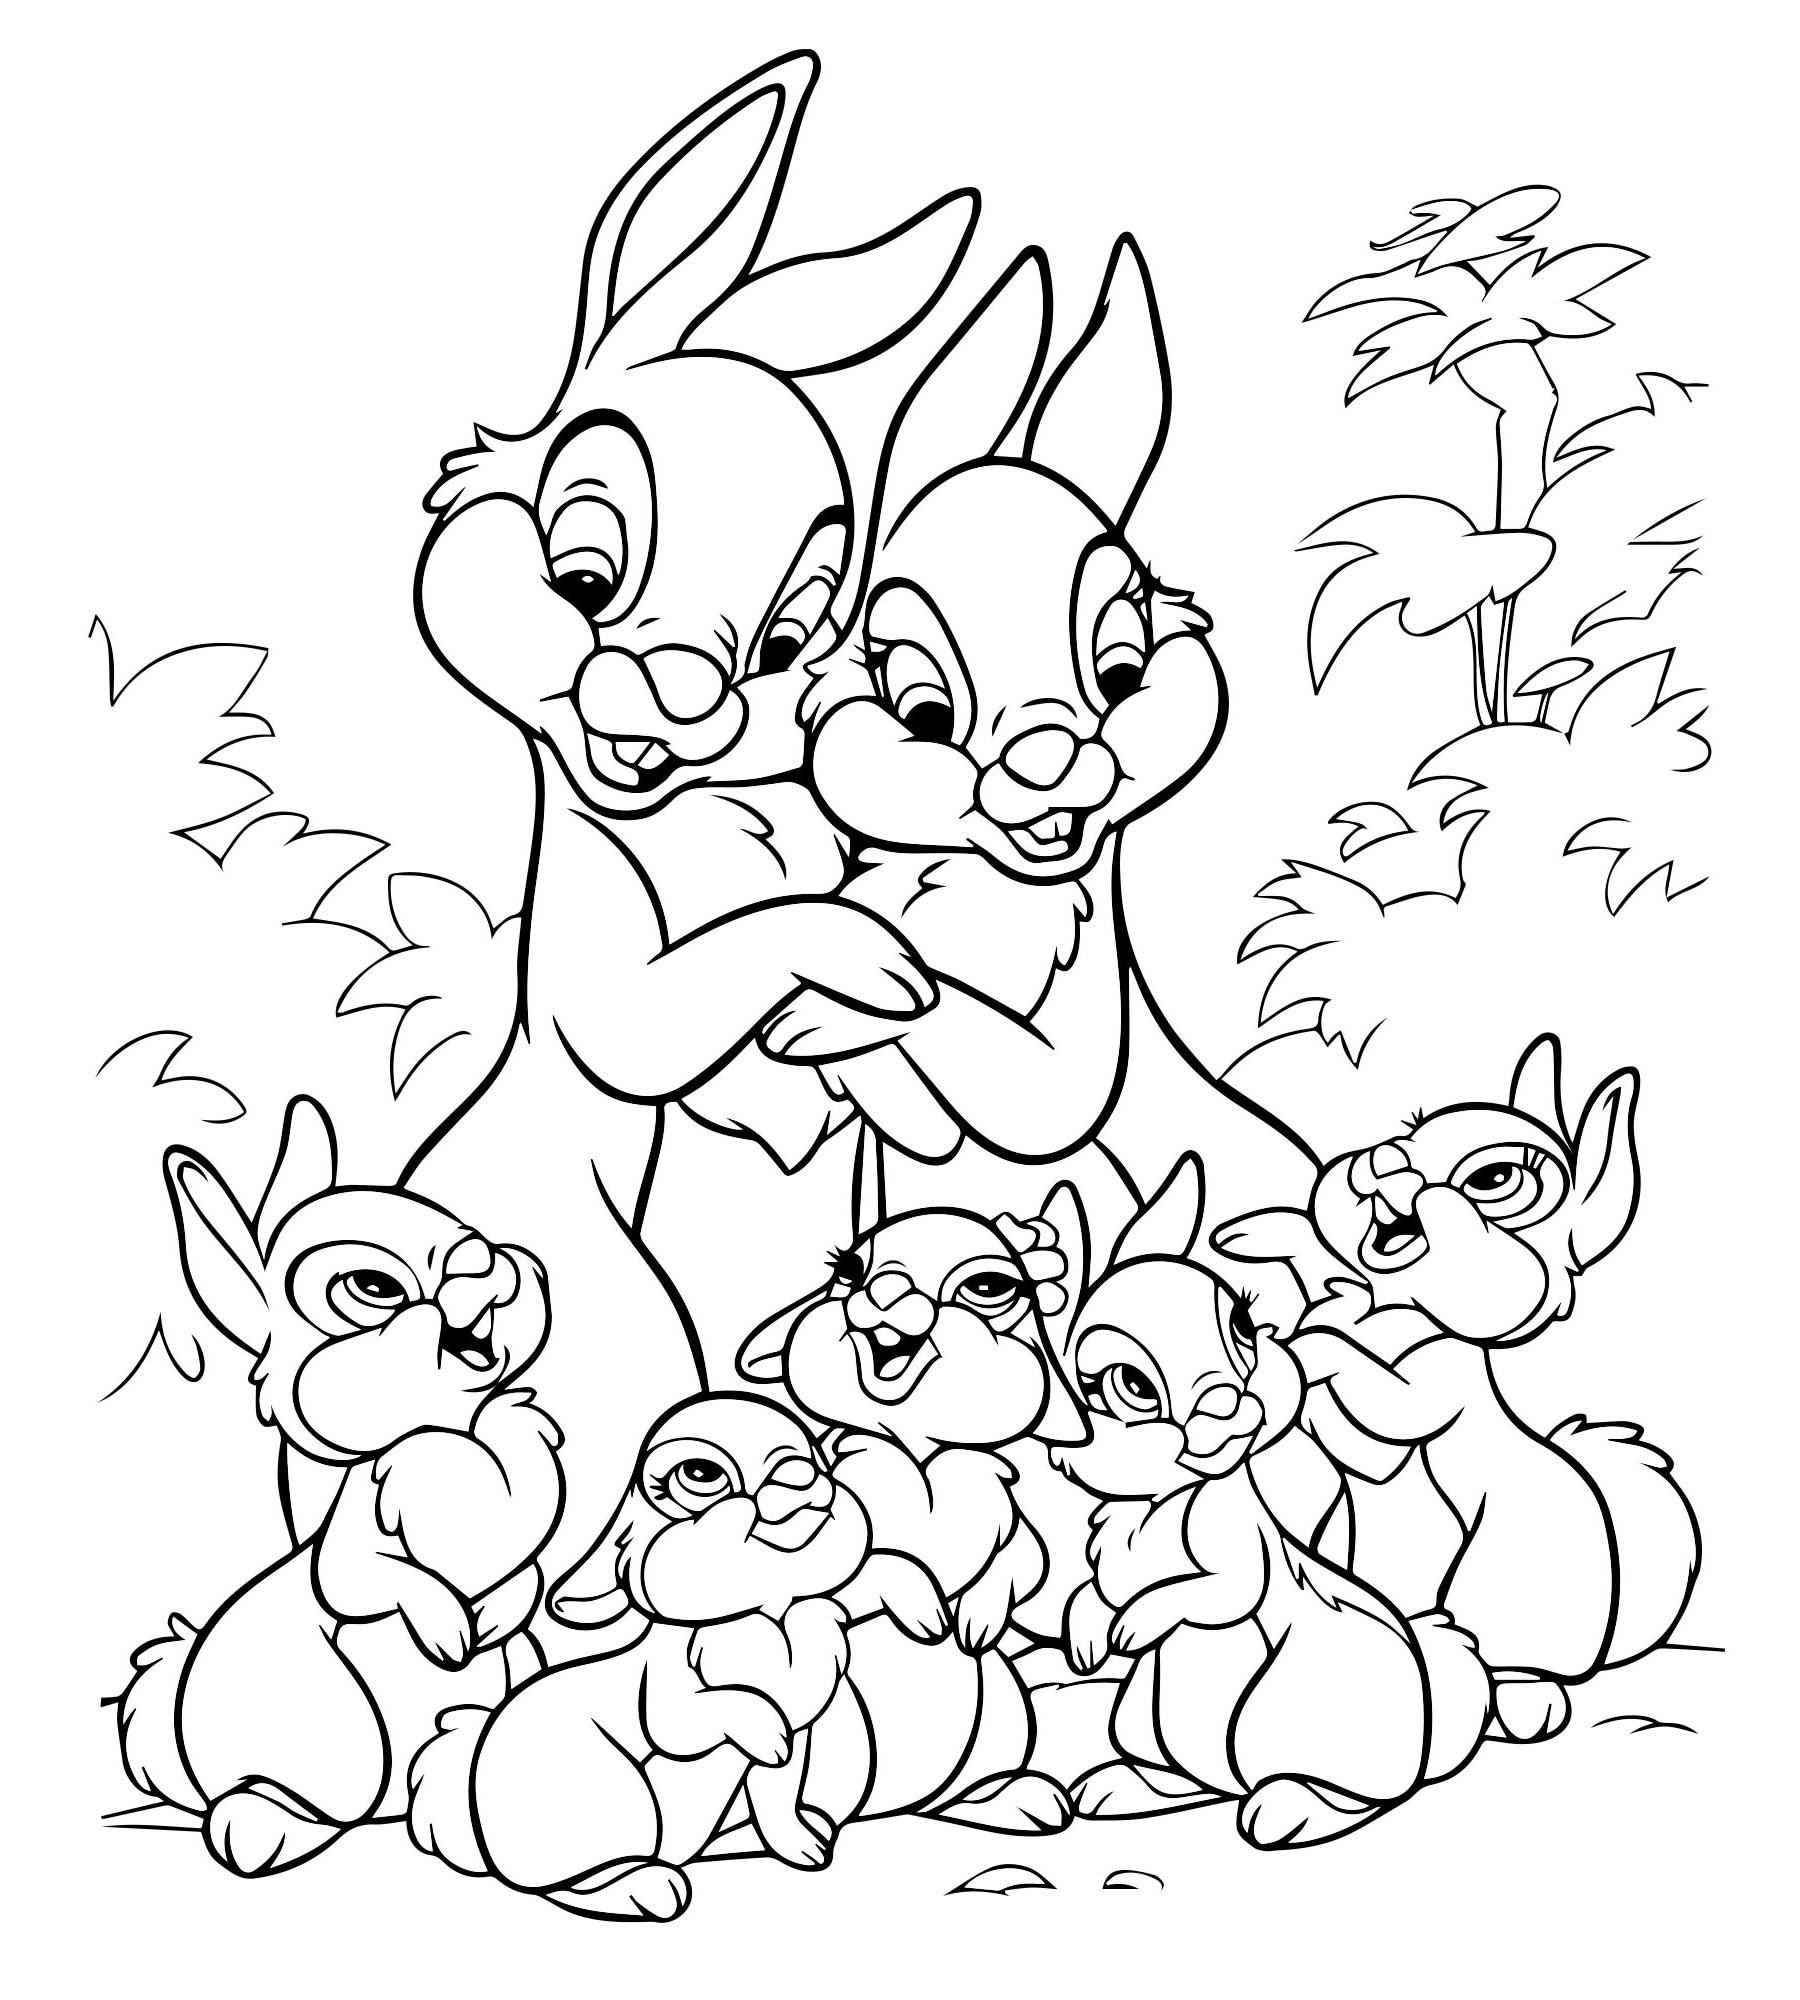 Семья кроликов раскраска для детей